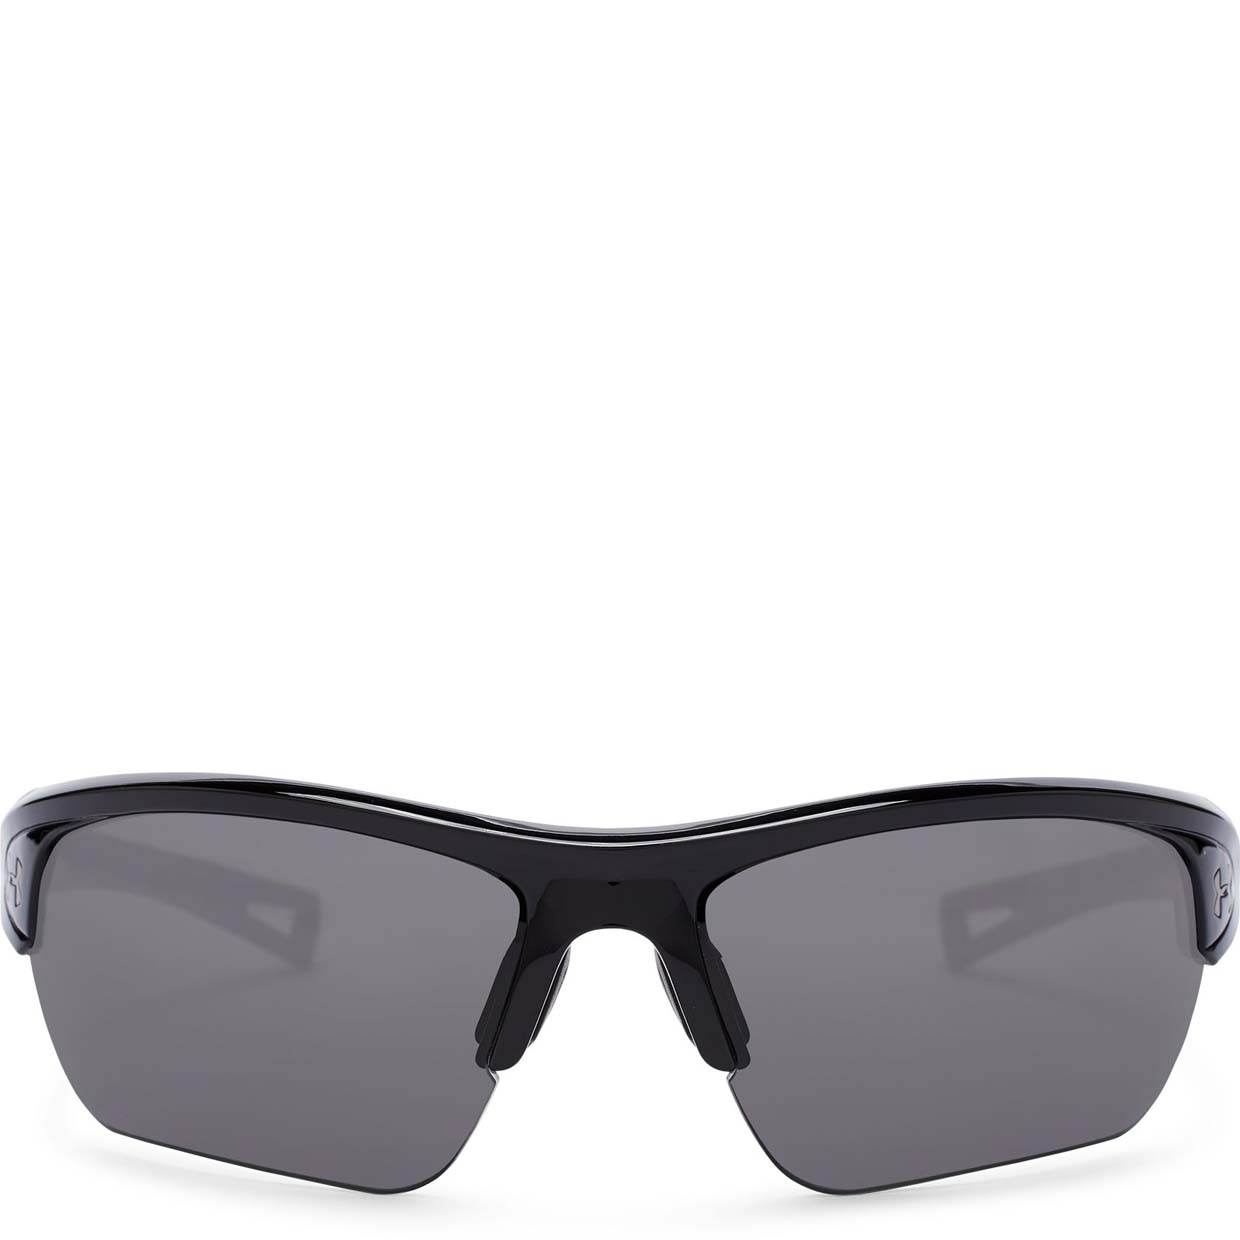 фото Солнцезащитные очки under armour octane storm polarized 1302659-002, черный, one size